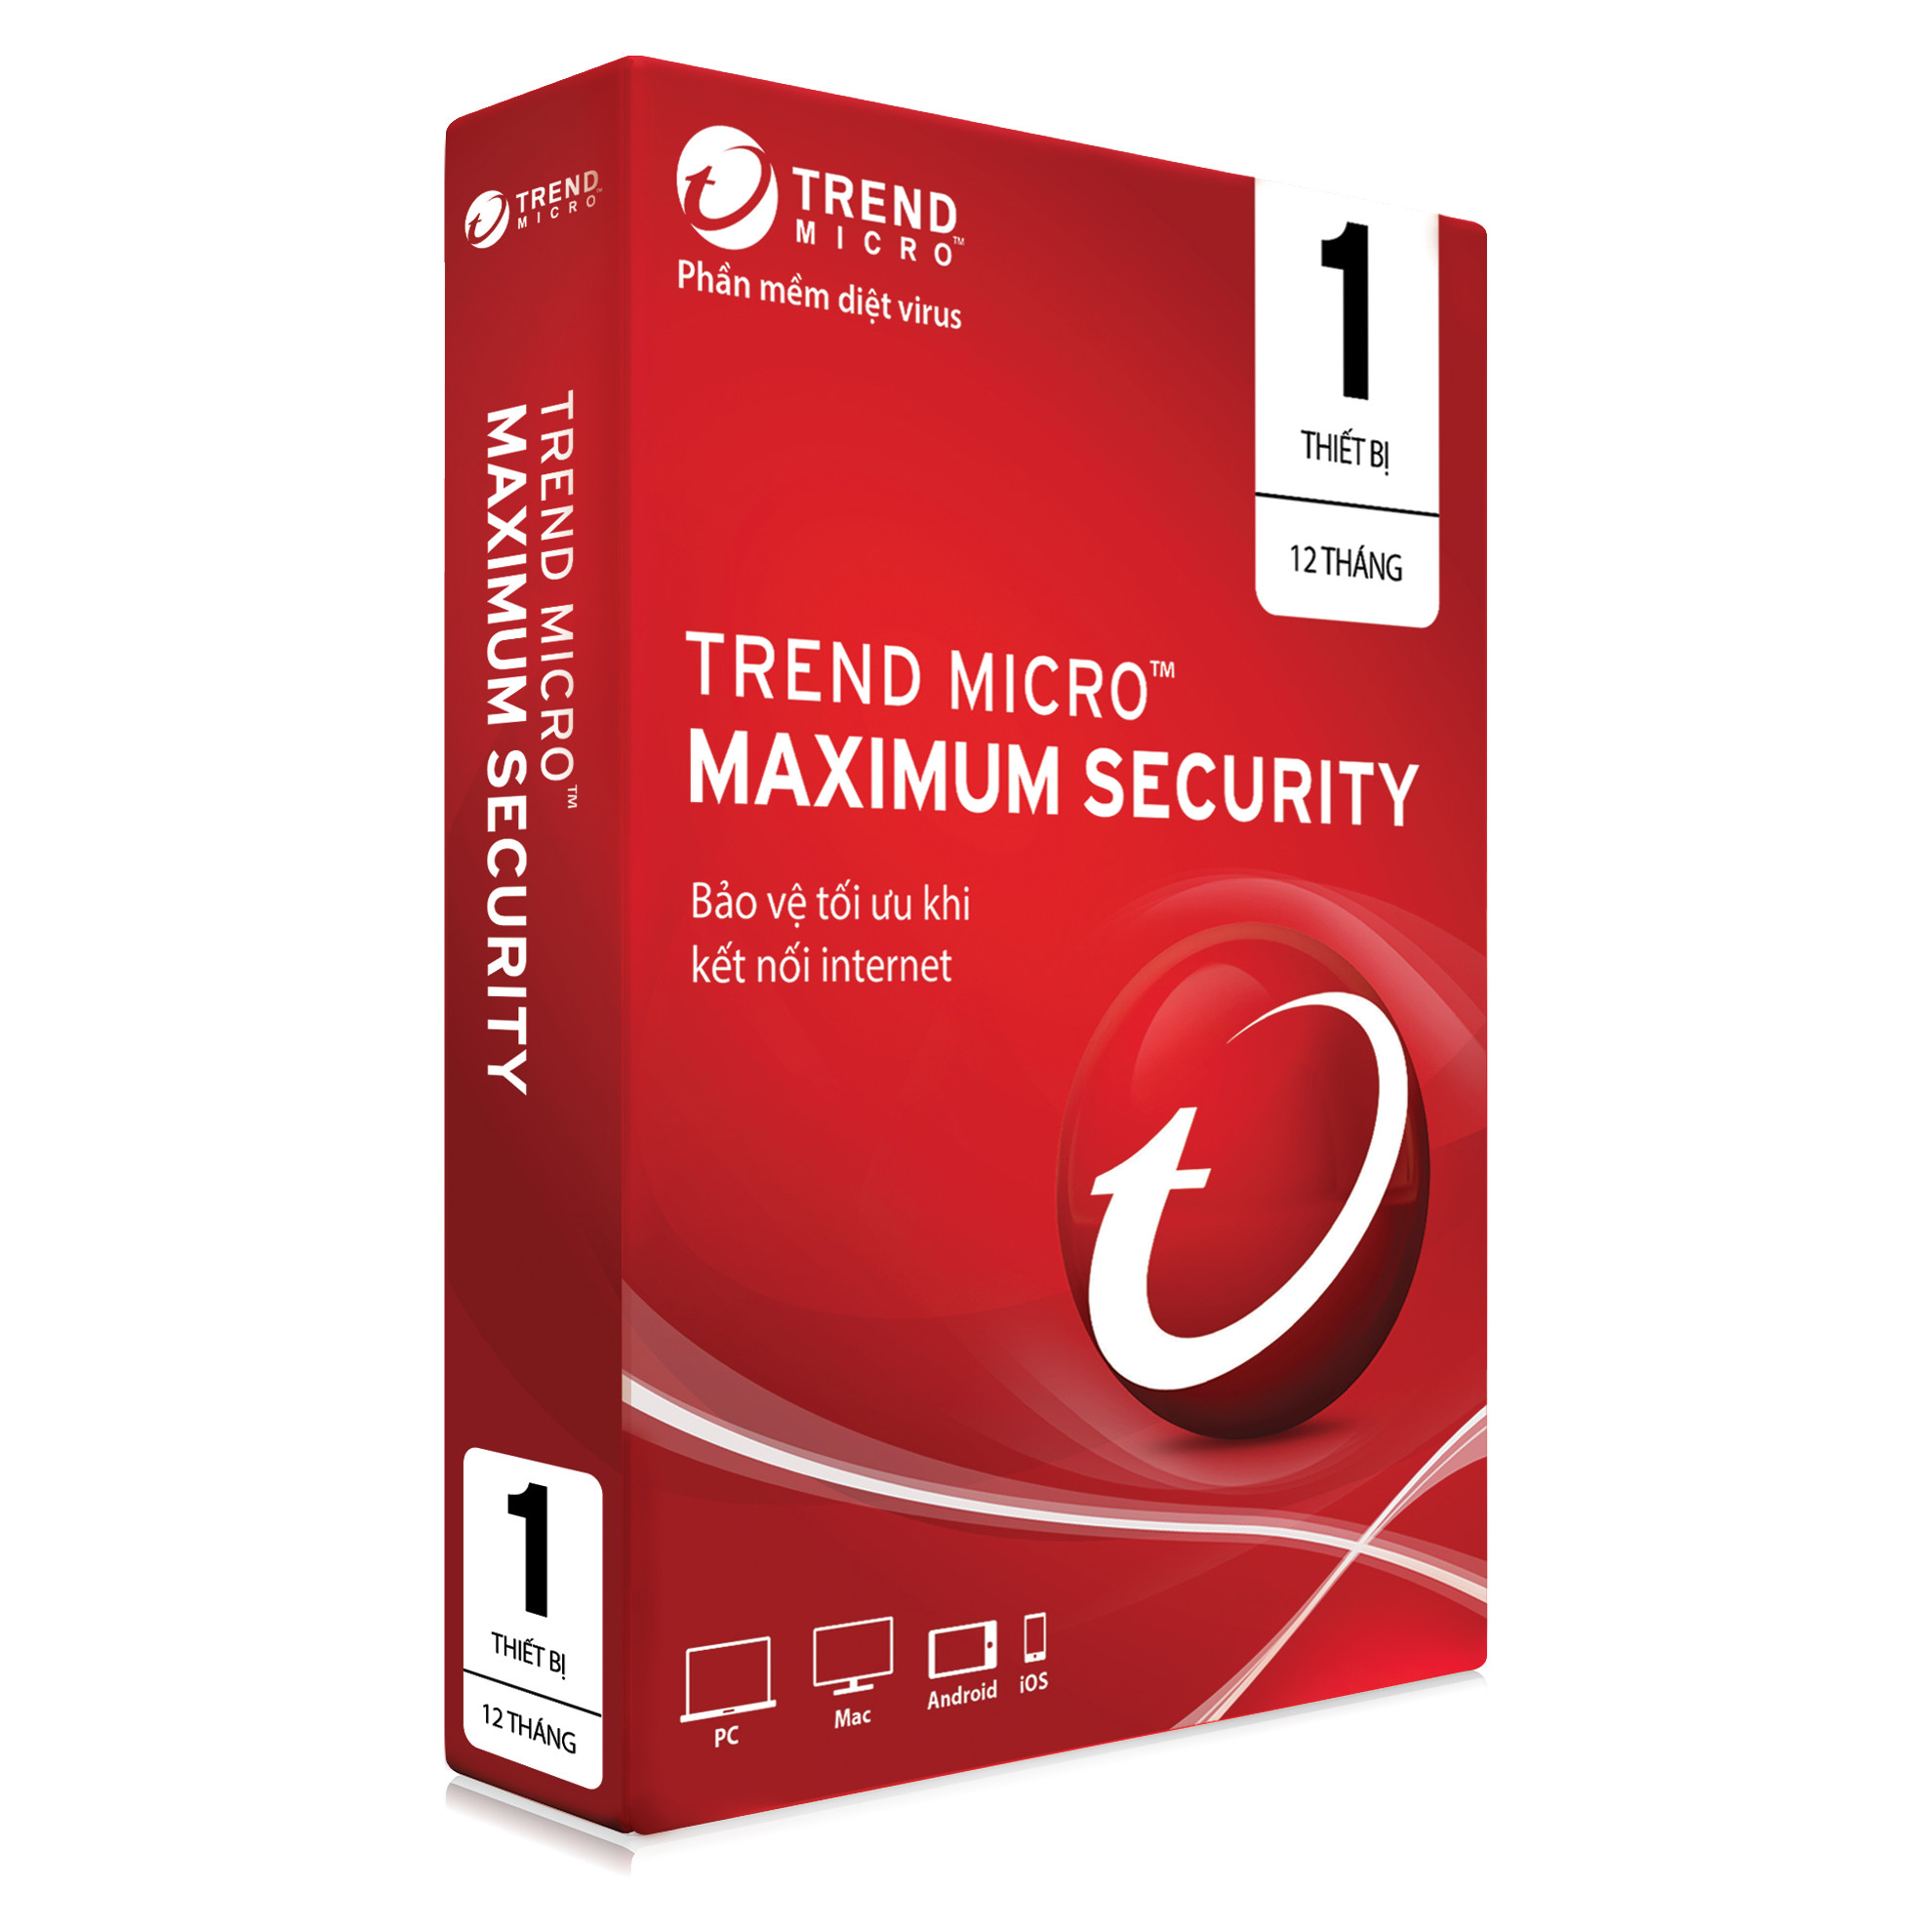 Phần Mềm Diệt Virus Trend Micro Maximum Security - 1PC 12 tháng - Hàng chính hãng